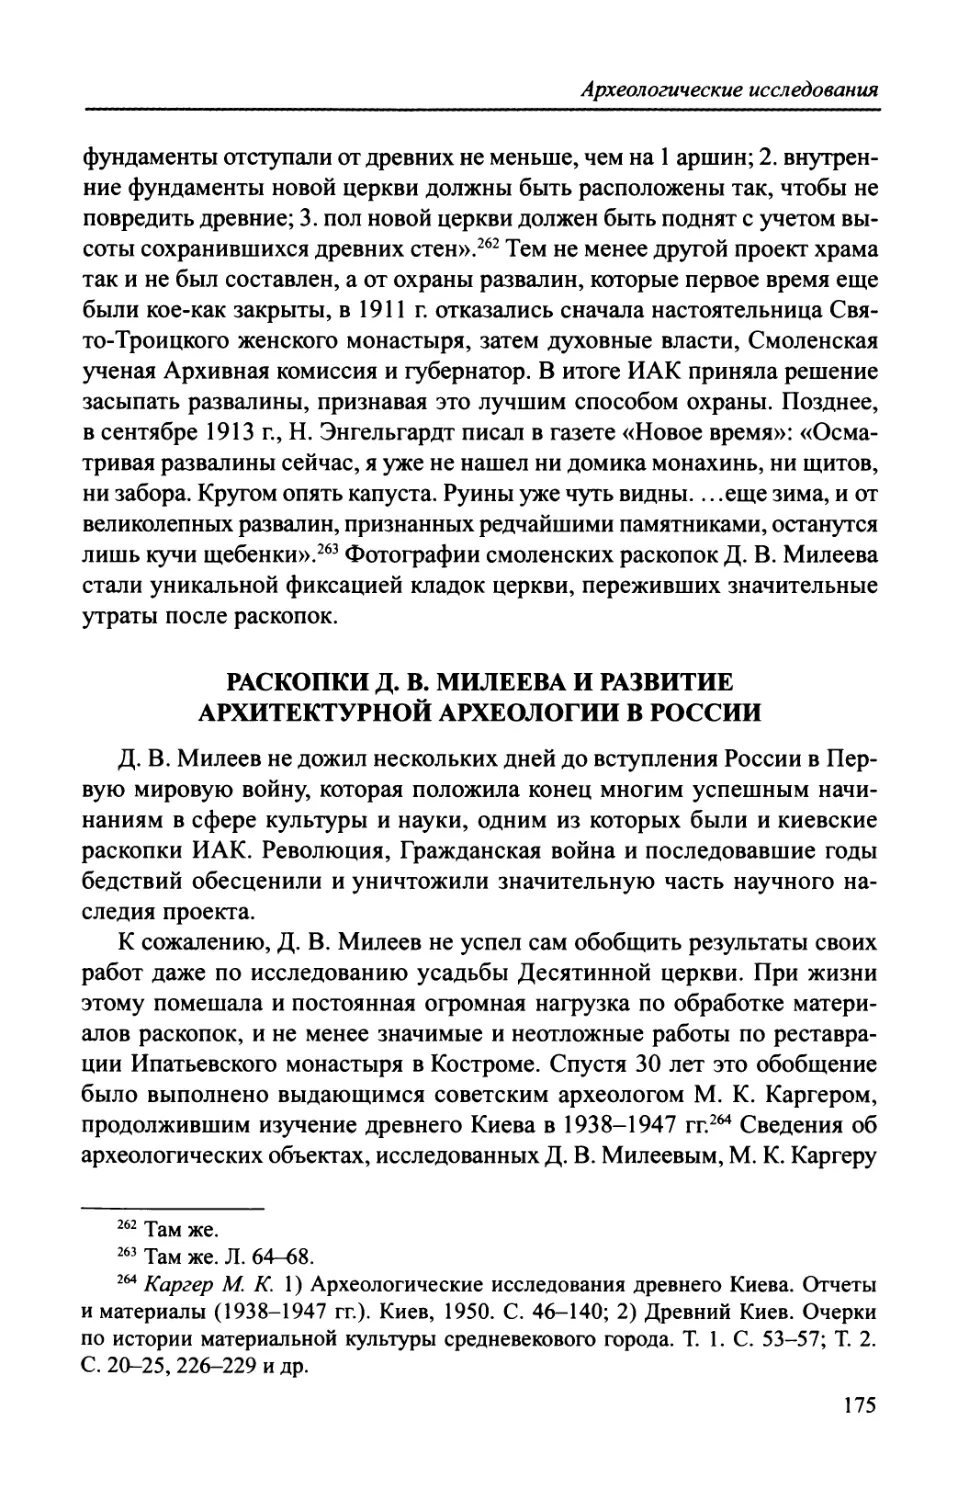 Раскопки Д. В. Милеева и развитие архитектурной археологии в России